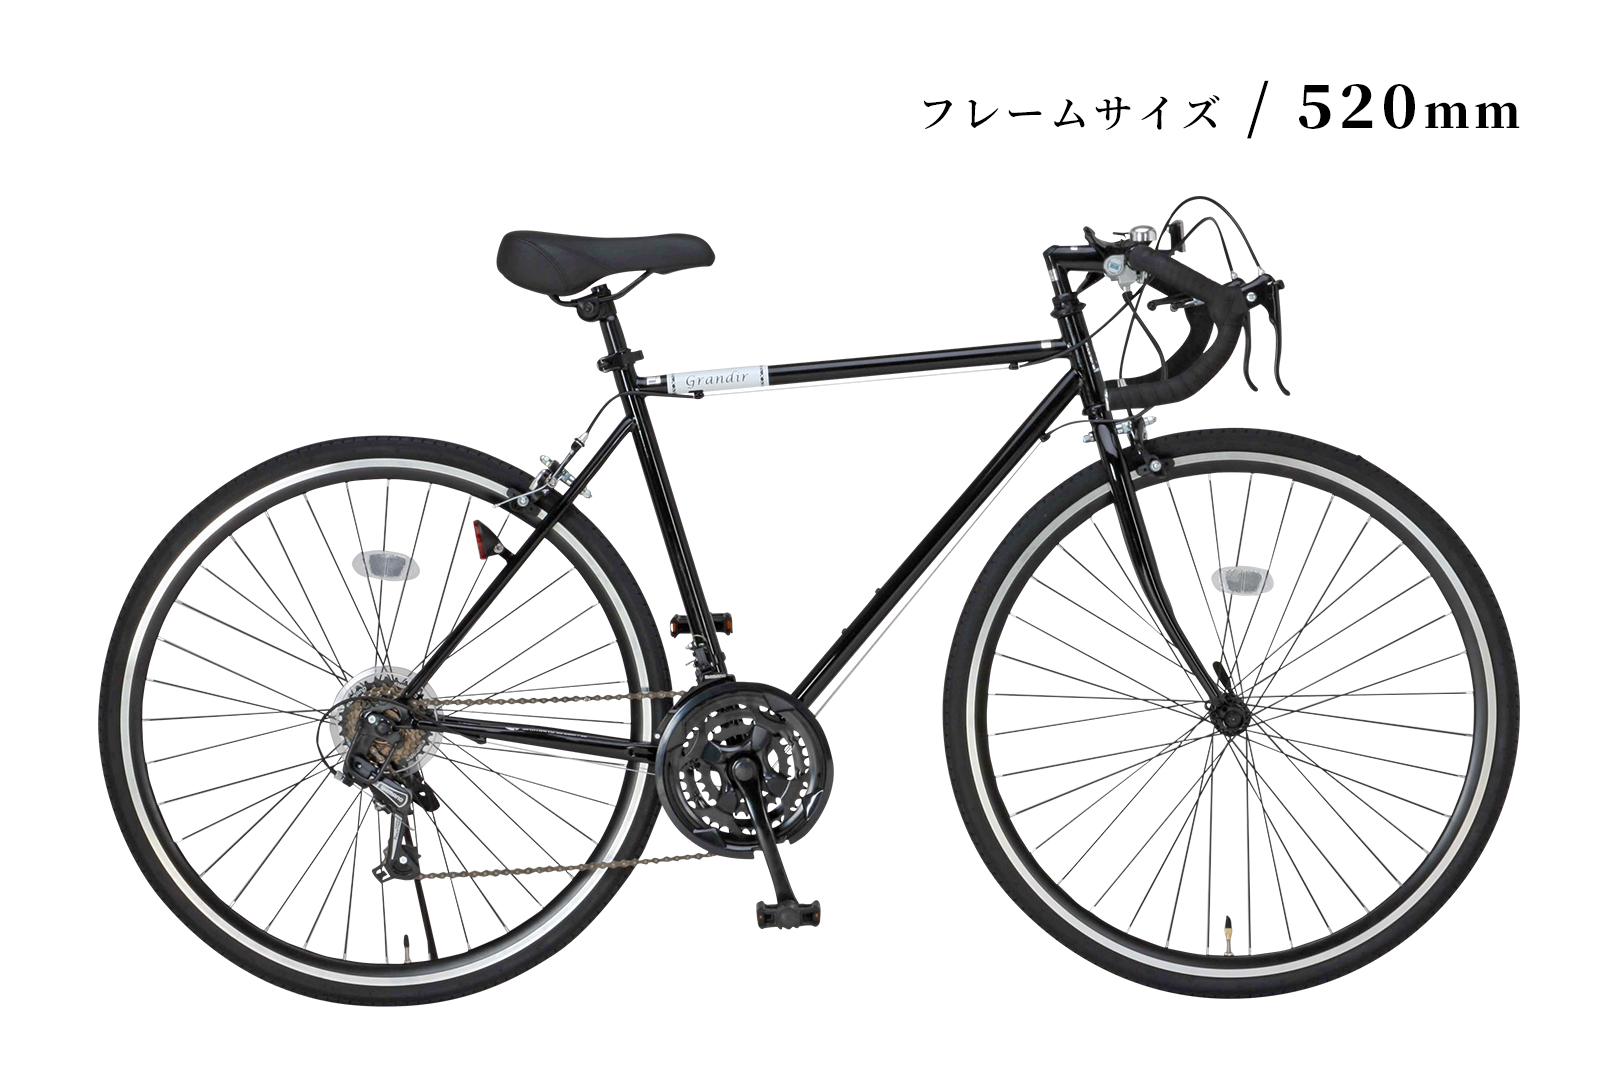 【お得】Grandir Sensitive ロードバイク 700c オレンジ 自転車本体 自転車 スポーツ・レジャー 新入荷